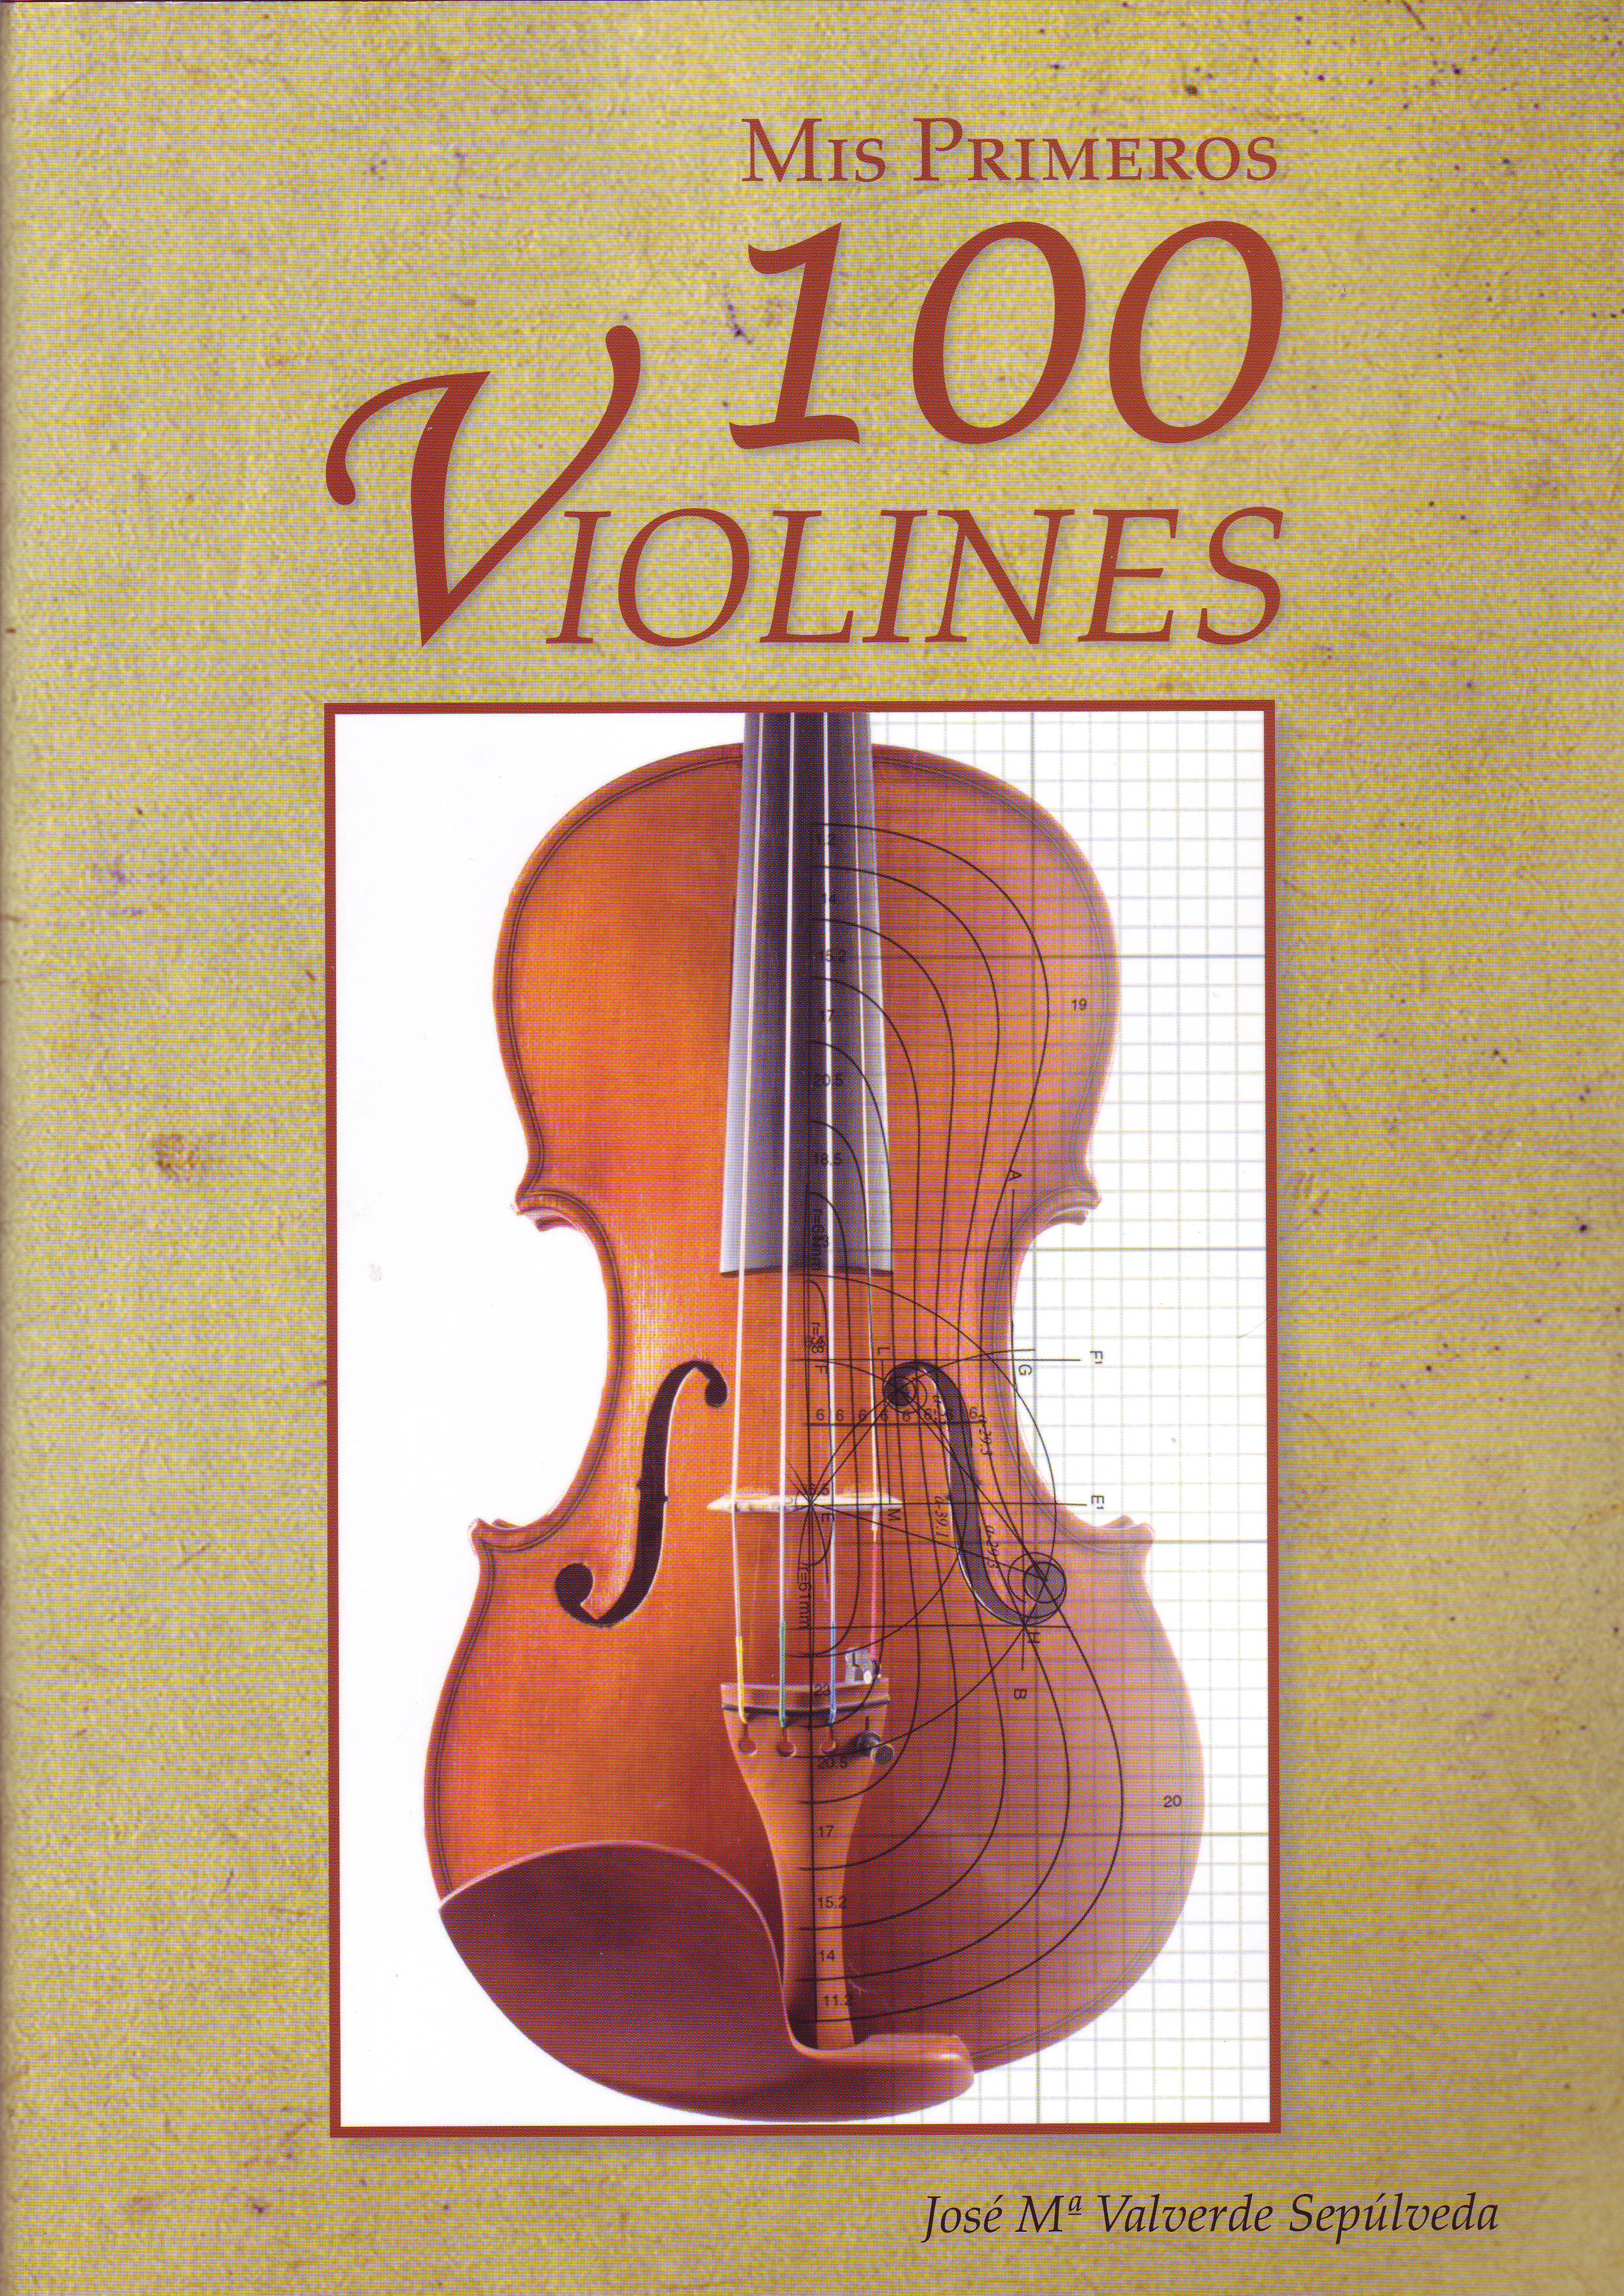 Presentación del libro "Mis primeros 100 violines" de José MªValverde, el miércoles 25 de enero a las 20:00